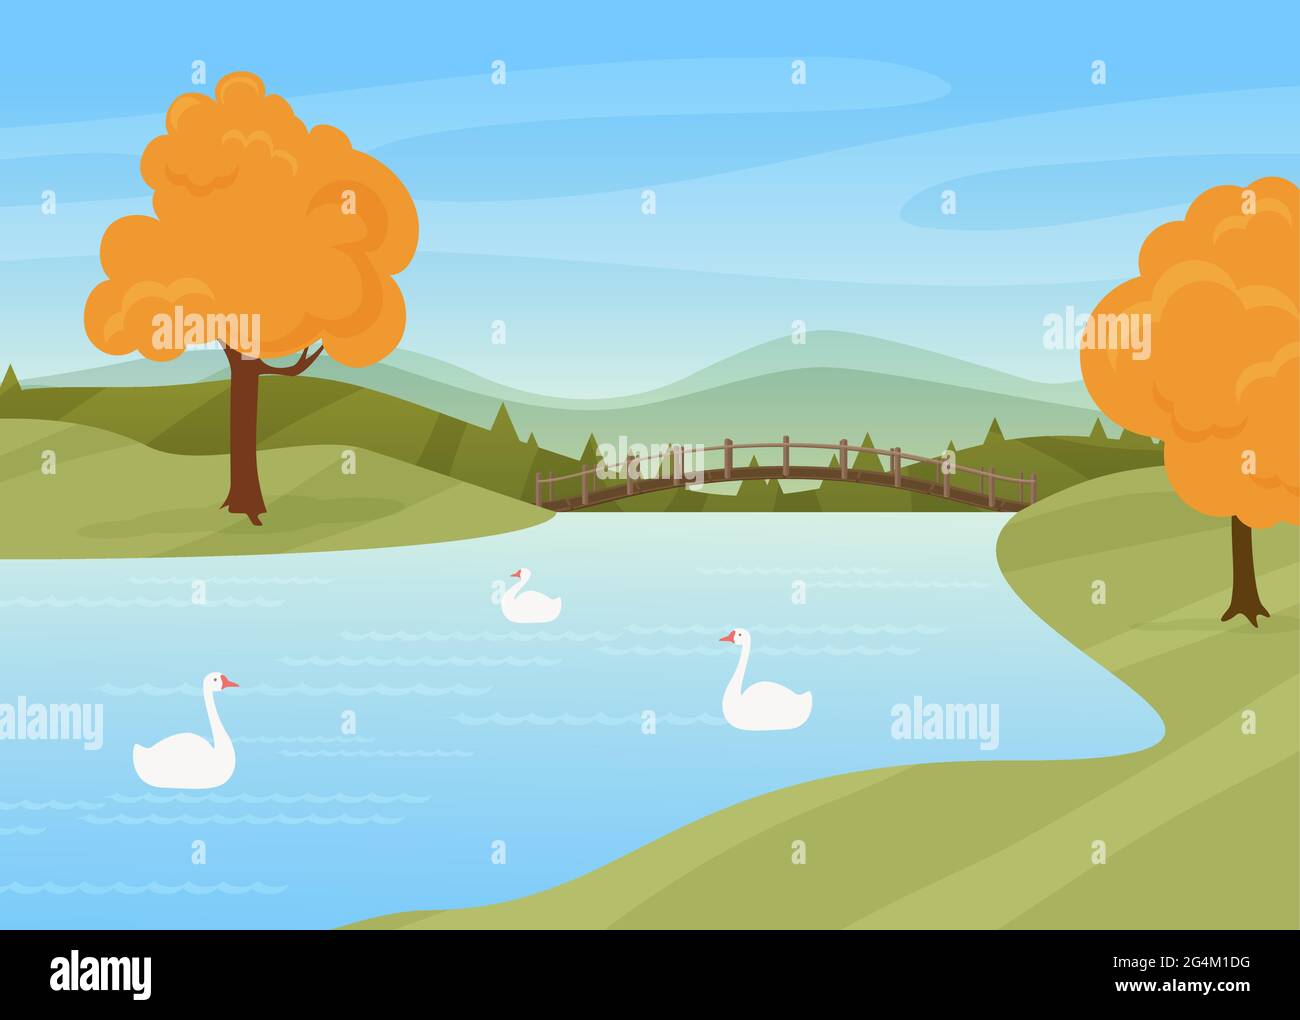 Schwäne schwimmen im Fluss, ländliche Herbst Natur Landschaft Vektorgrafik. Cartoon wilde Vögel auf der Wasseroberfläche, Brücke über Fluss oder See, Bäume mit gelben Herbstblättern stehen am Flusshintergrund Stock Vektor